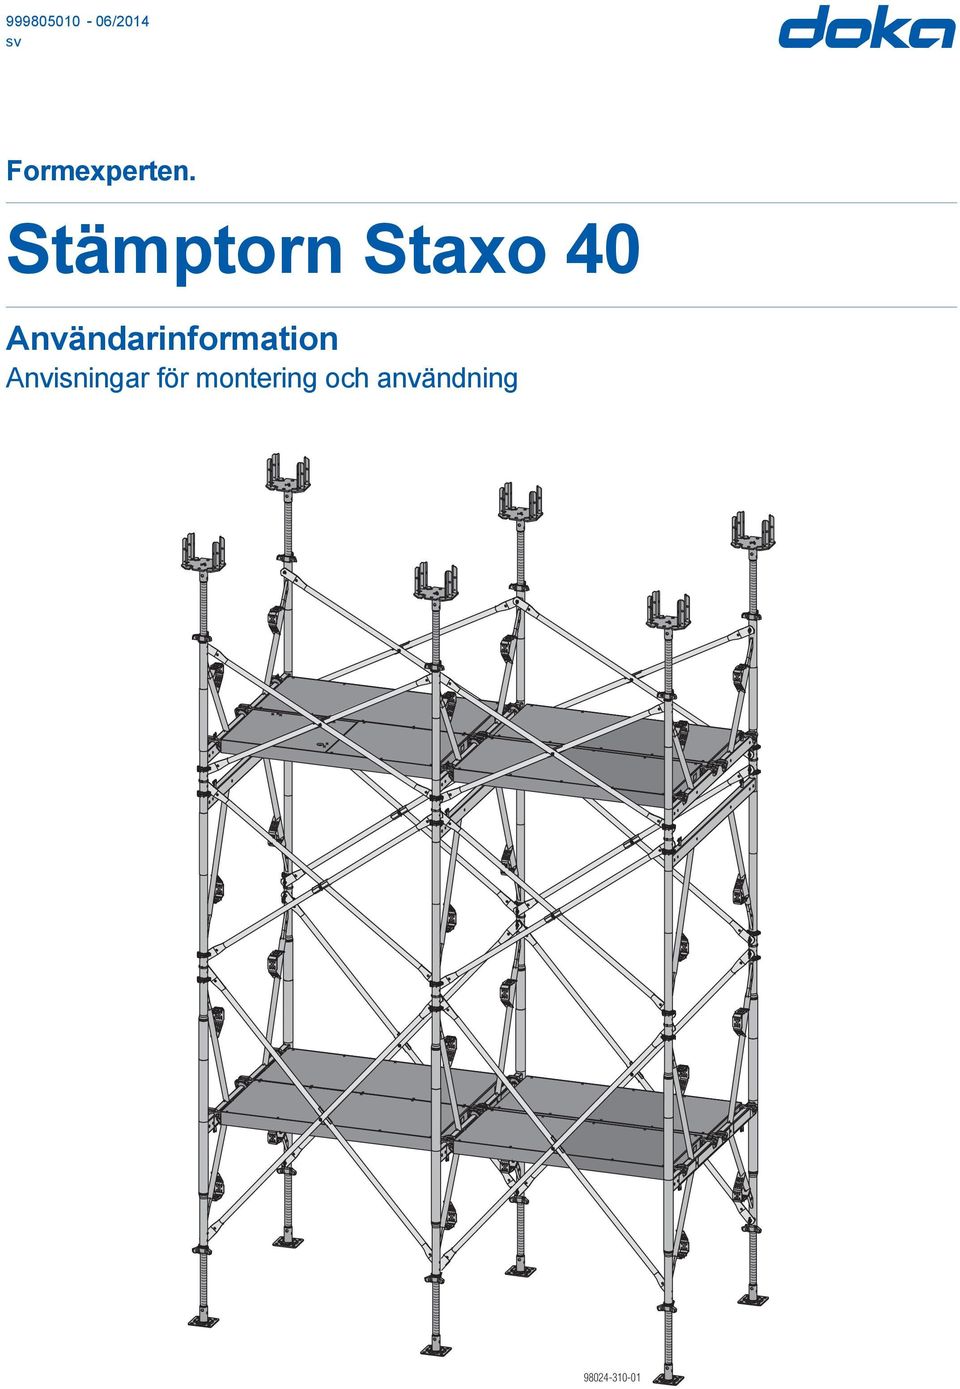 Stämptorn Staxo 40